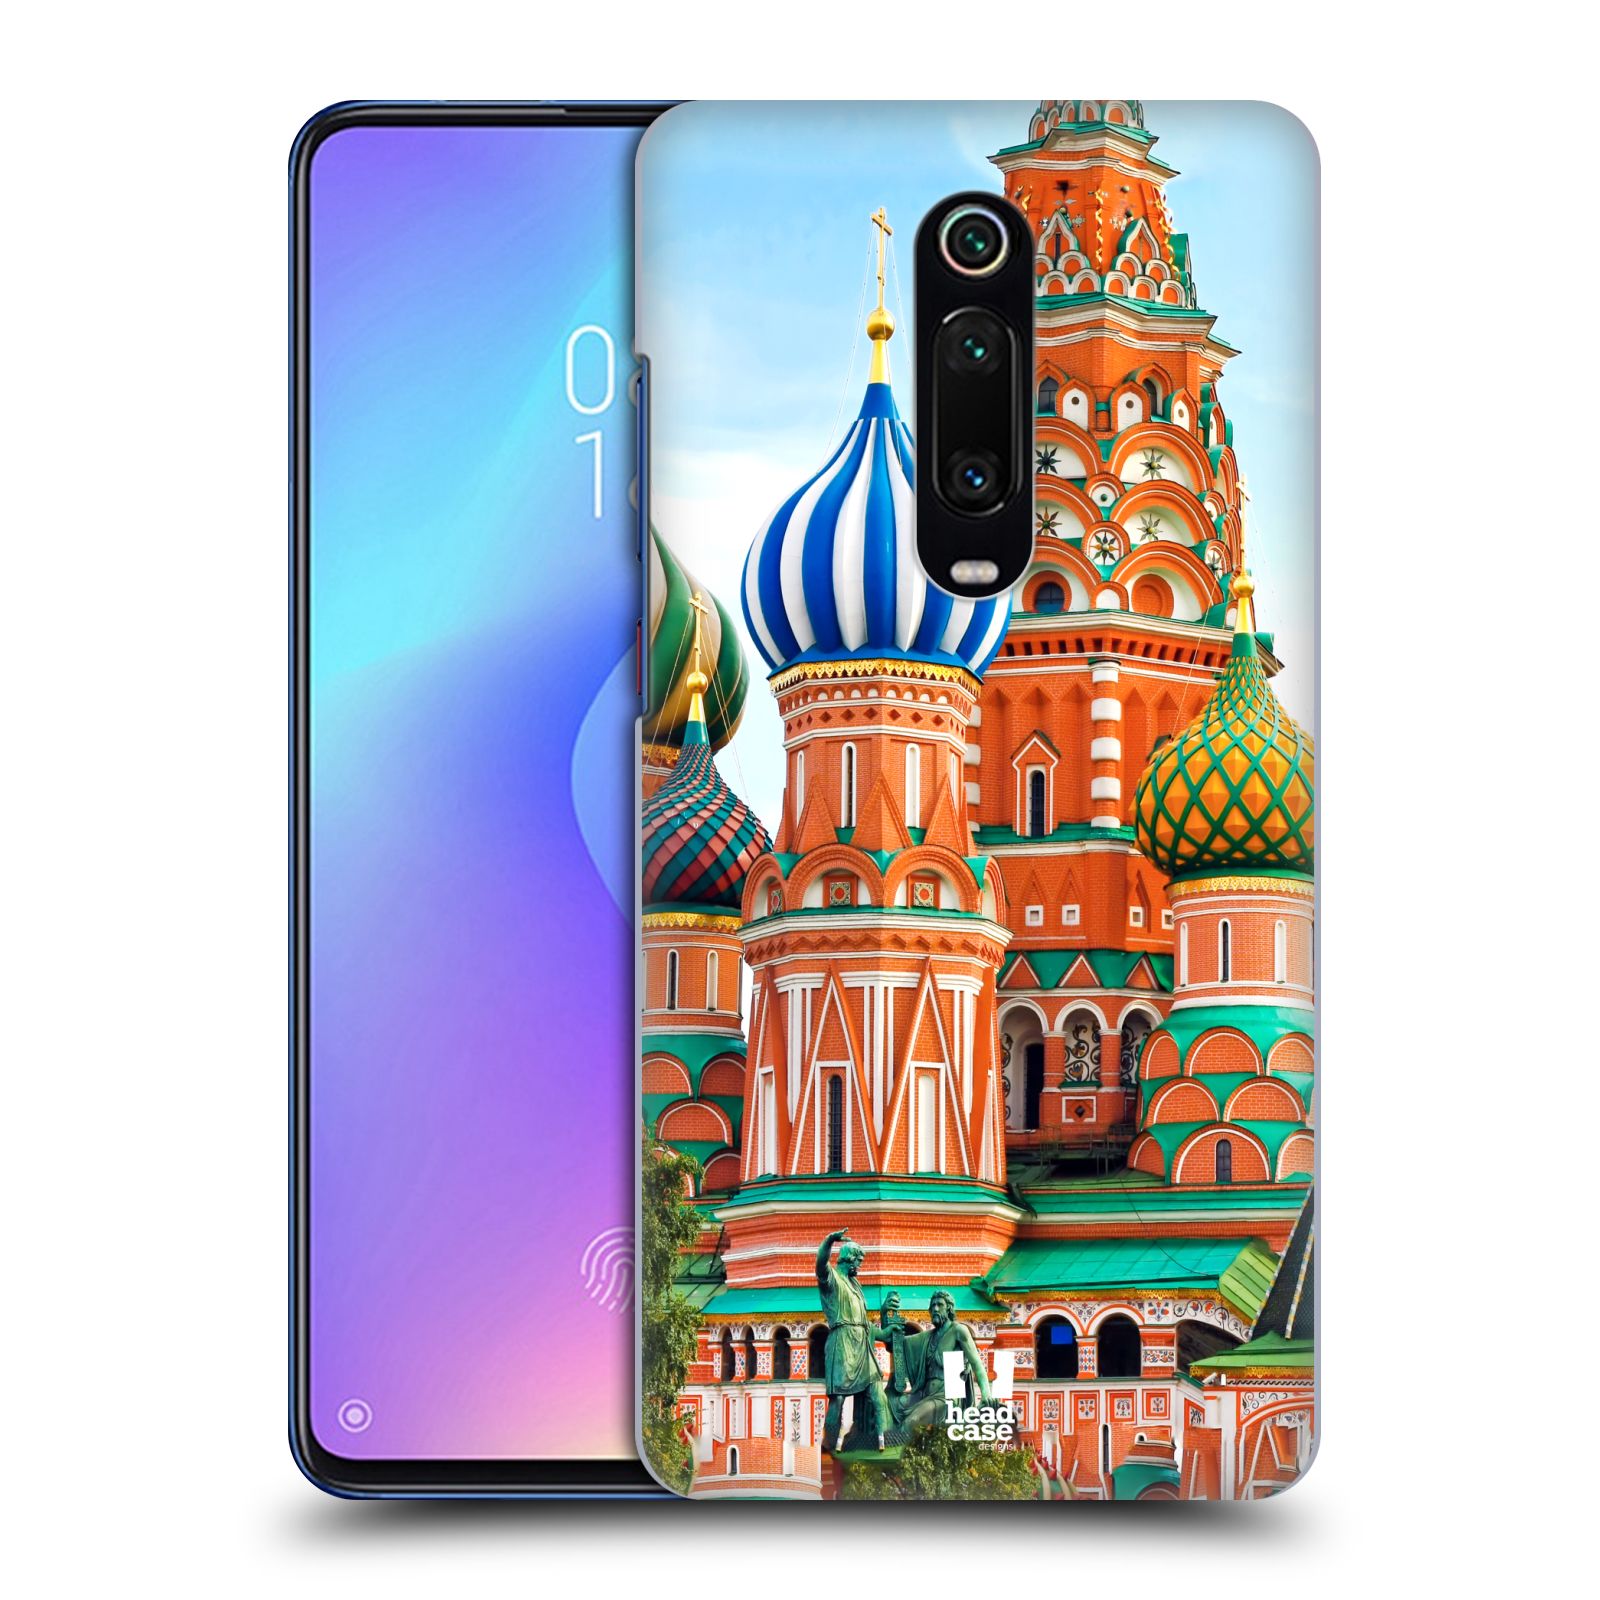 Pouzdro na mobil Xiaomi Mi 9T PRO - HEAD CASE - vzor Města foto náměstí RUSKO,MOSKVA, RUDÉ NÁMĚSTÍ